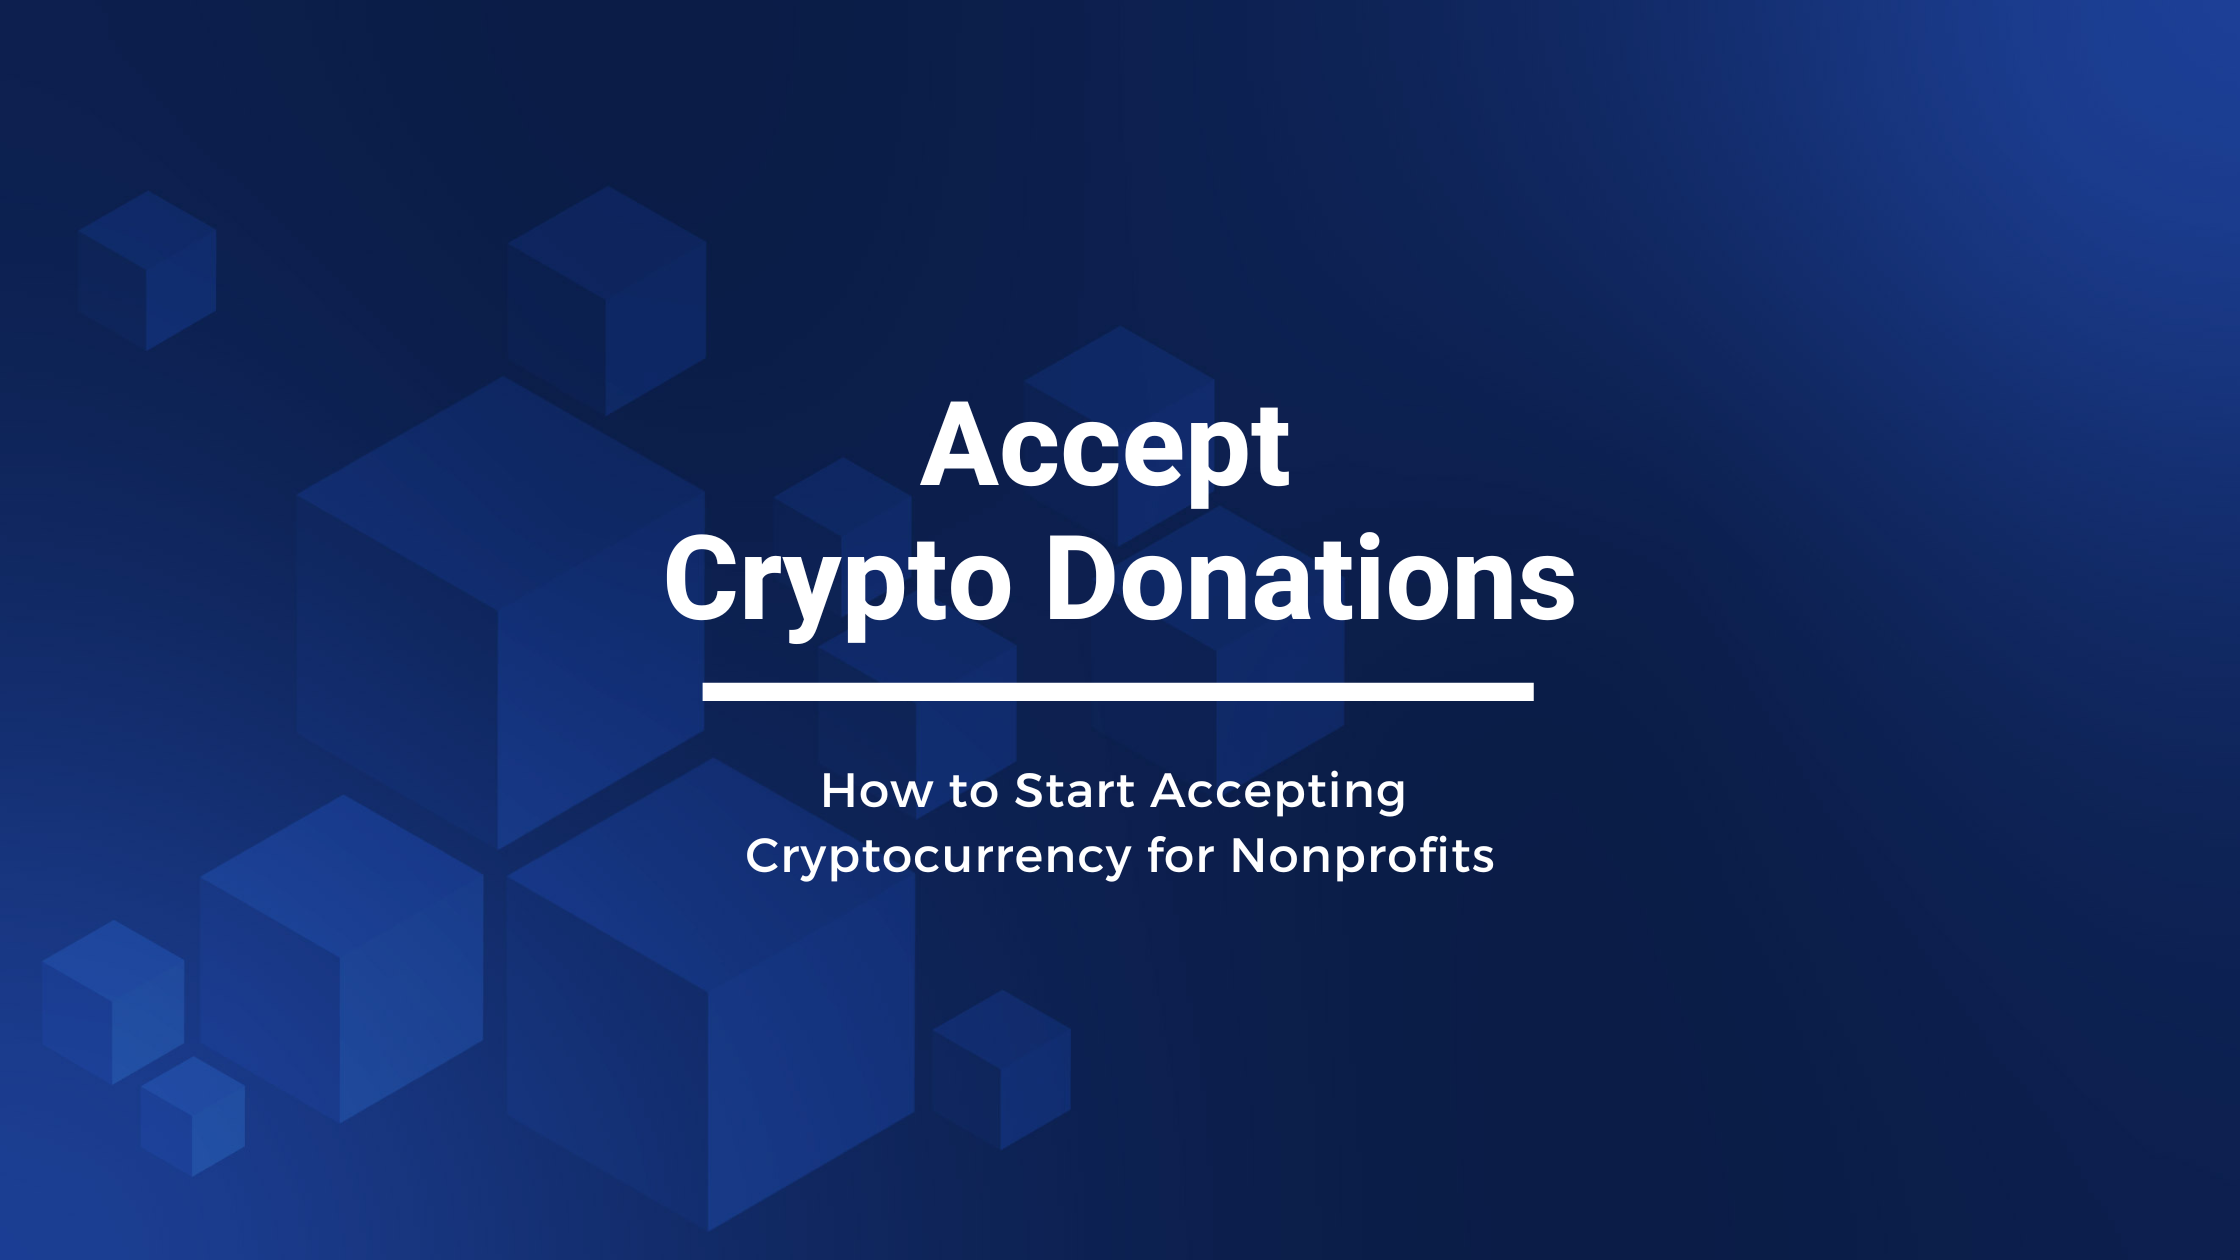 crypto.com donations